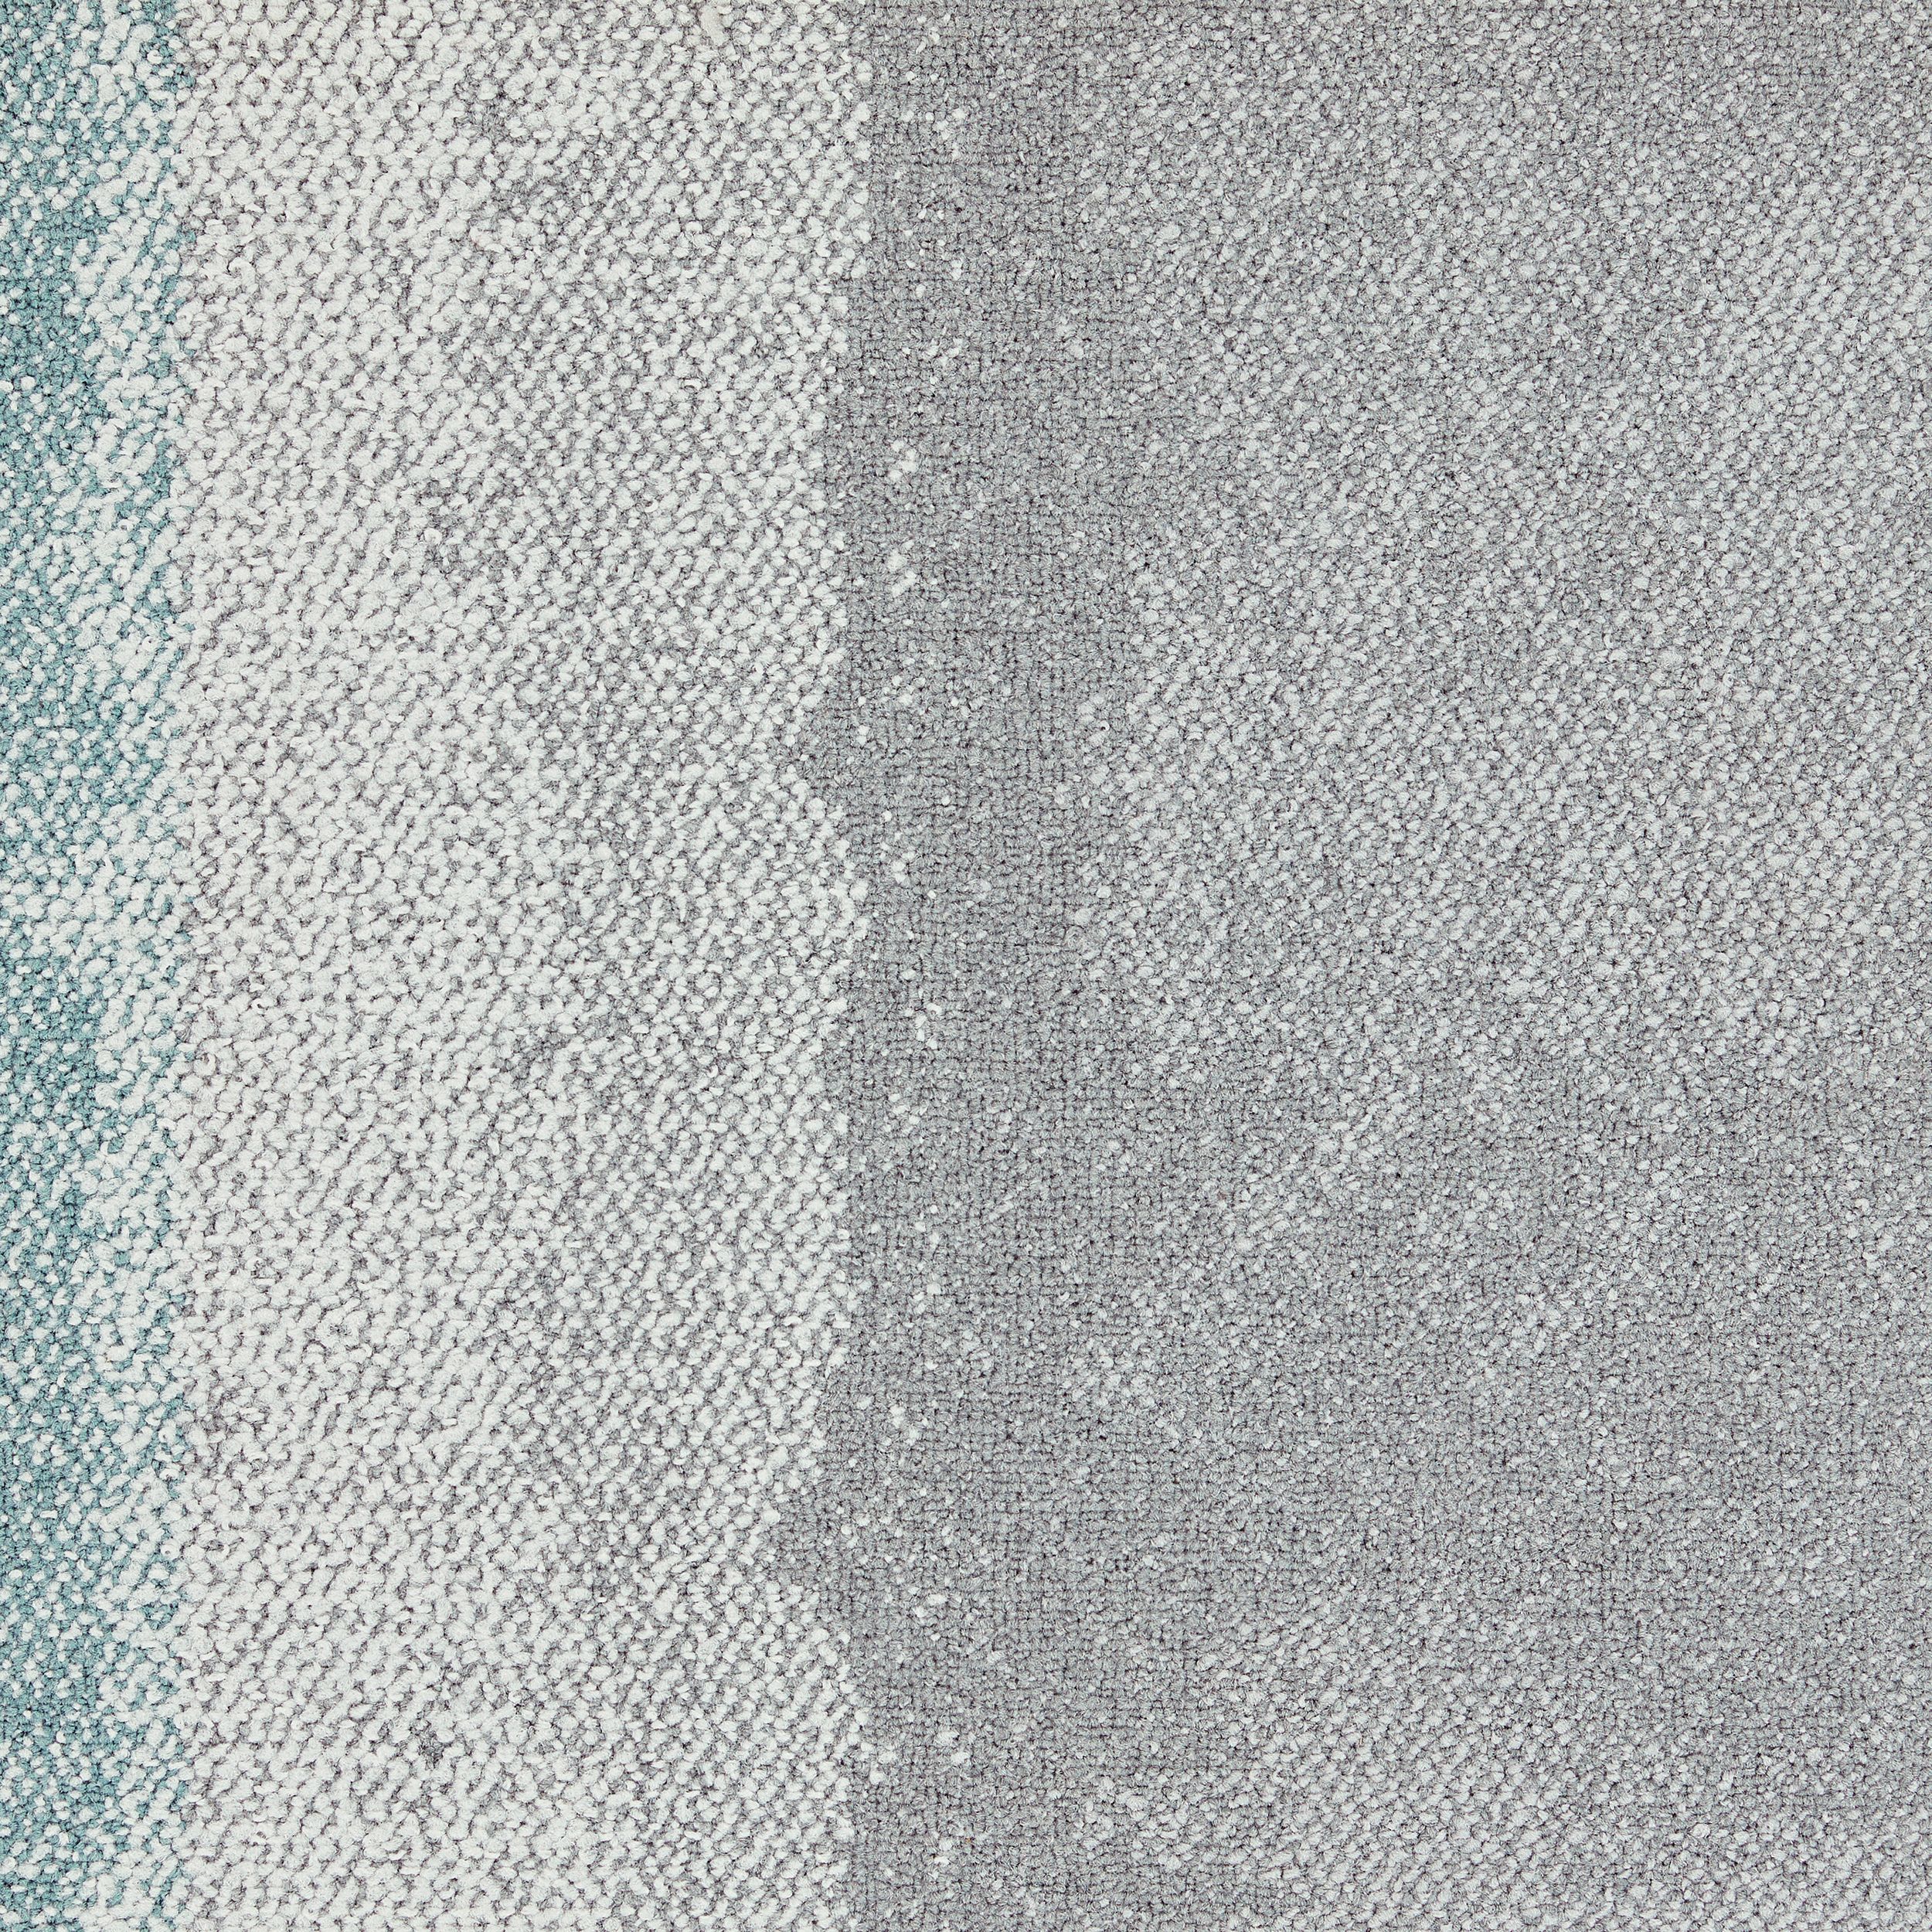 Composure Edge Carpet Tile In Wave/Isolation número de imagen 2